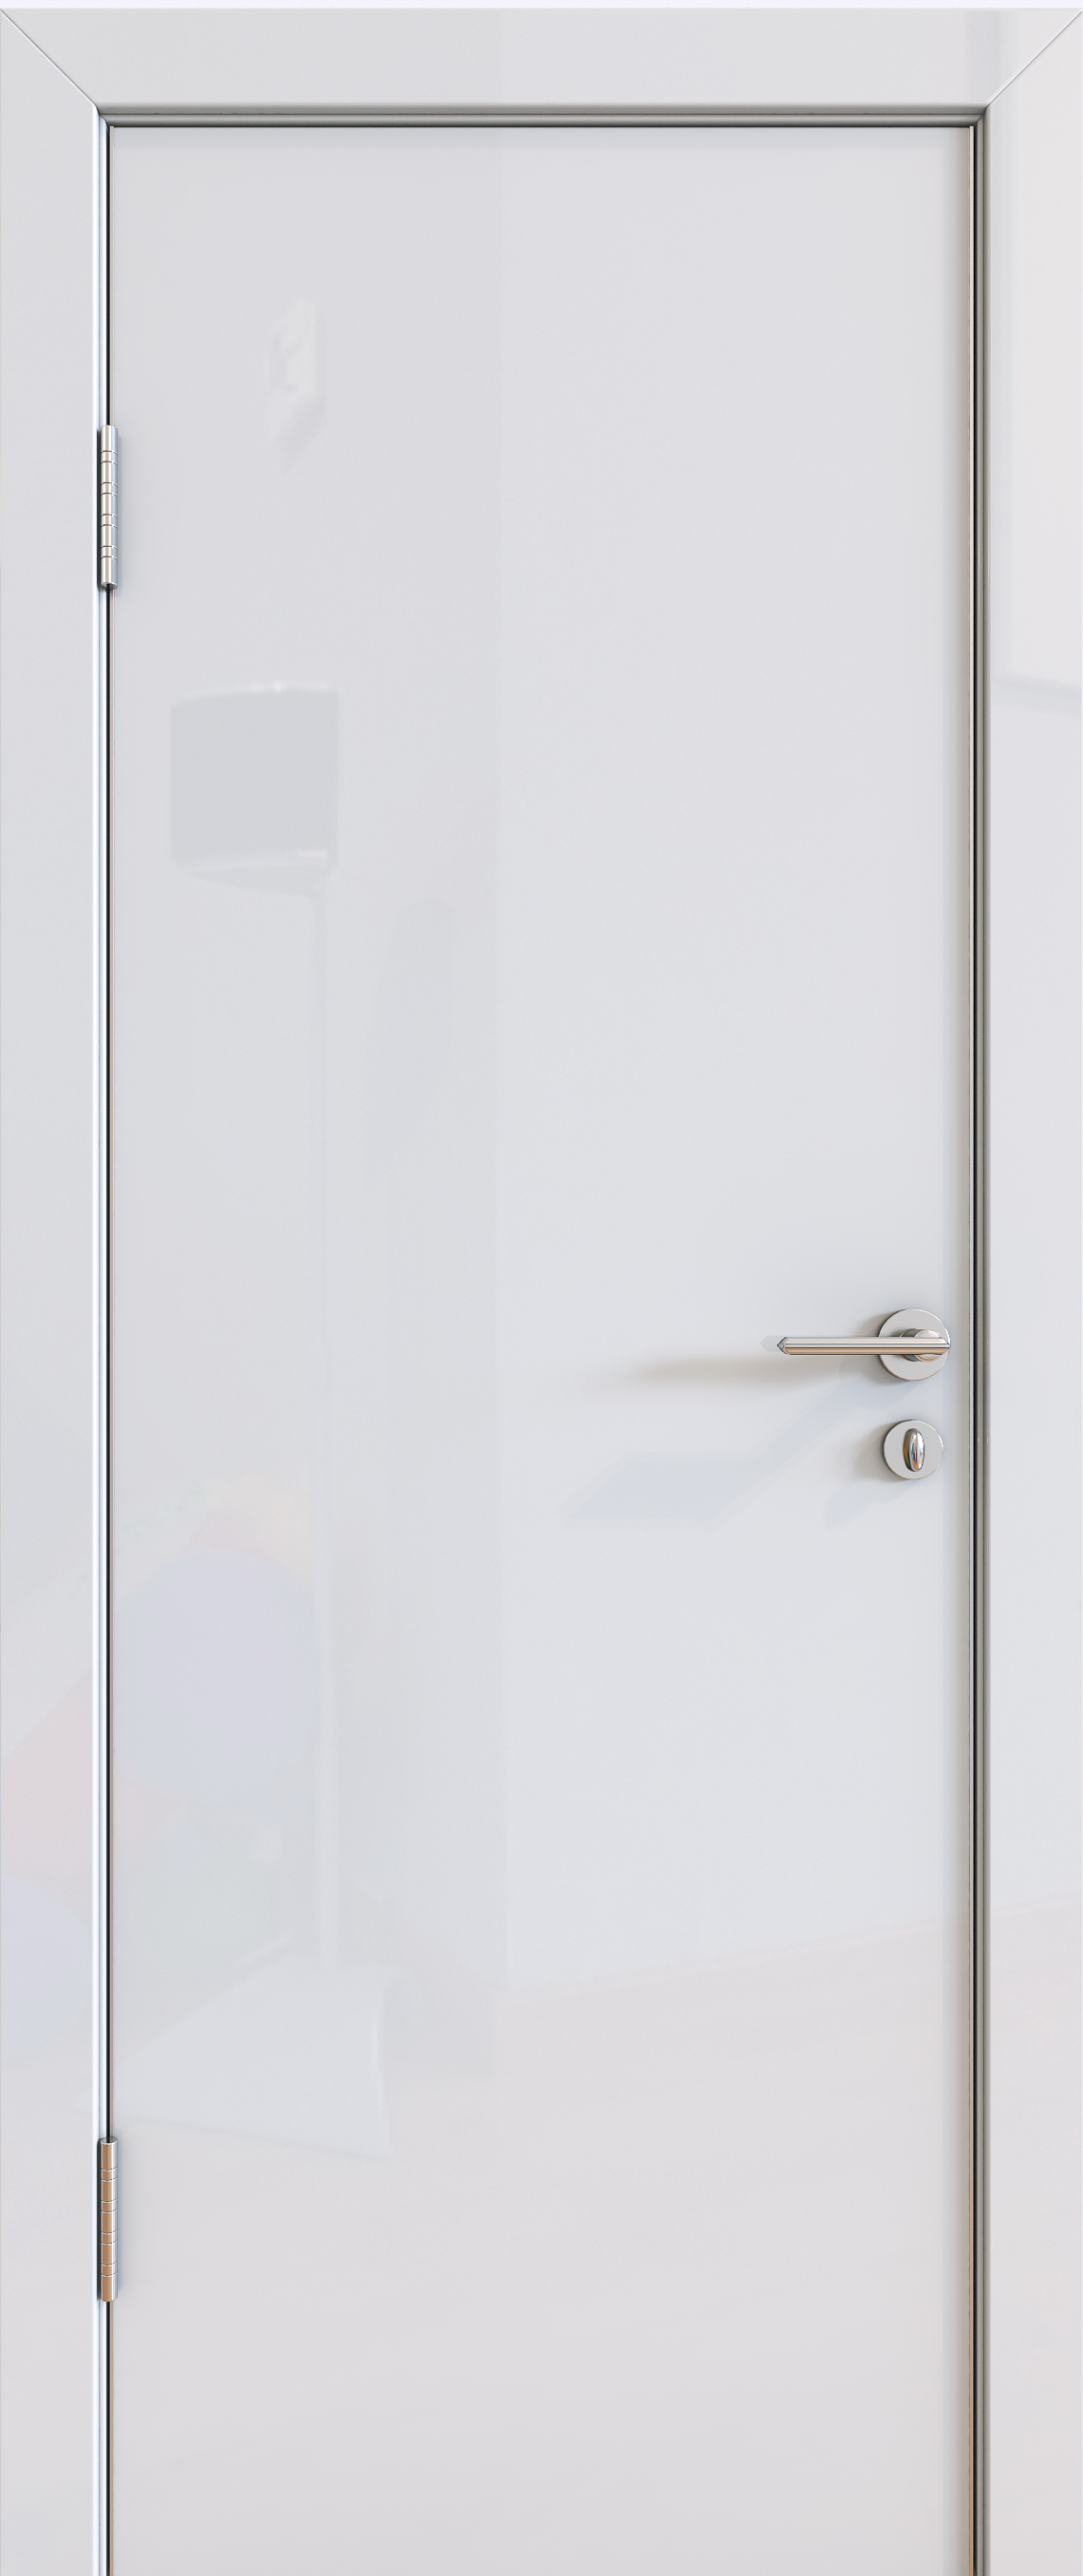 межкомнатные двери глянцевая межкомнатная дверь gloss 01 белый глянцевый